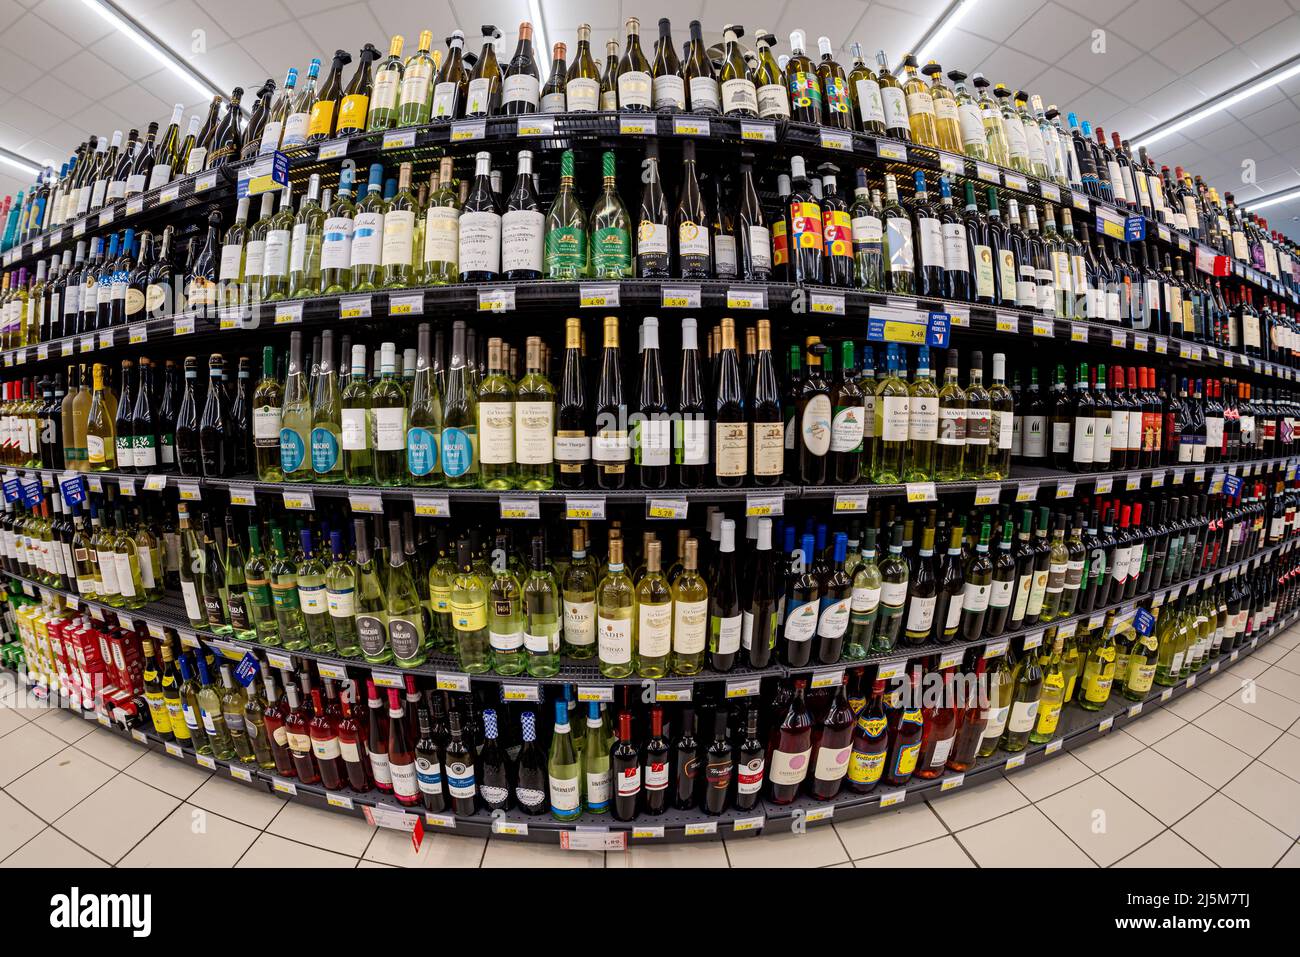 Fossano, Italia - 20 aprile 2022: Scaffali con bottiglie di vino di varie marche e varietà di uva in vendita in un supermercato italiano, fish eye vision Foto Stock